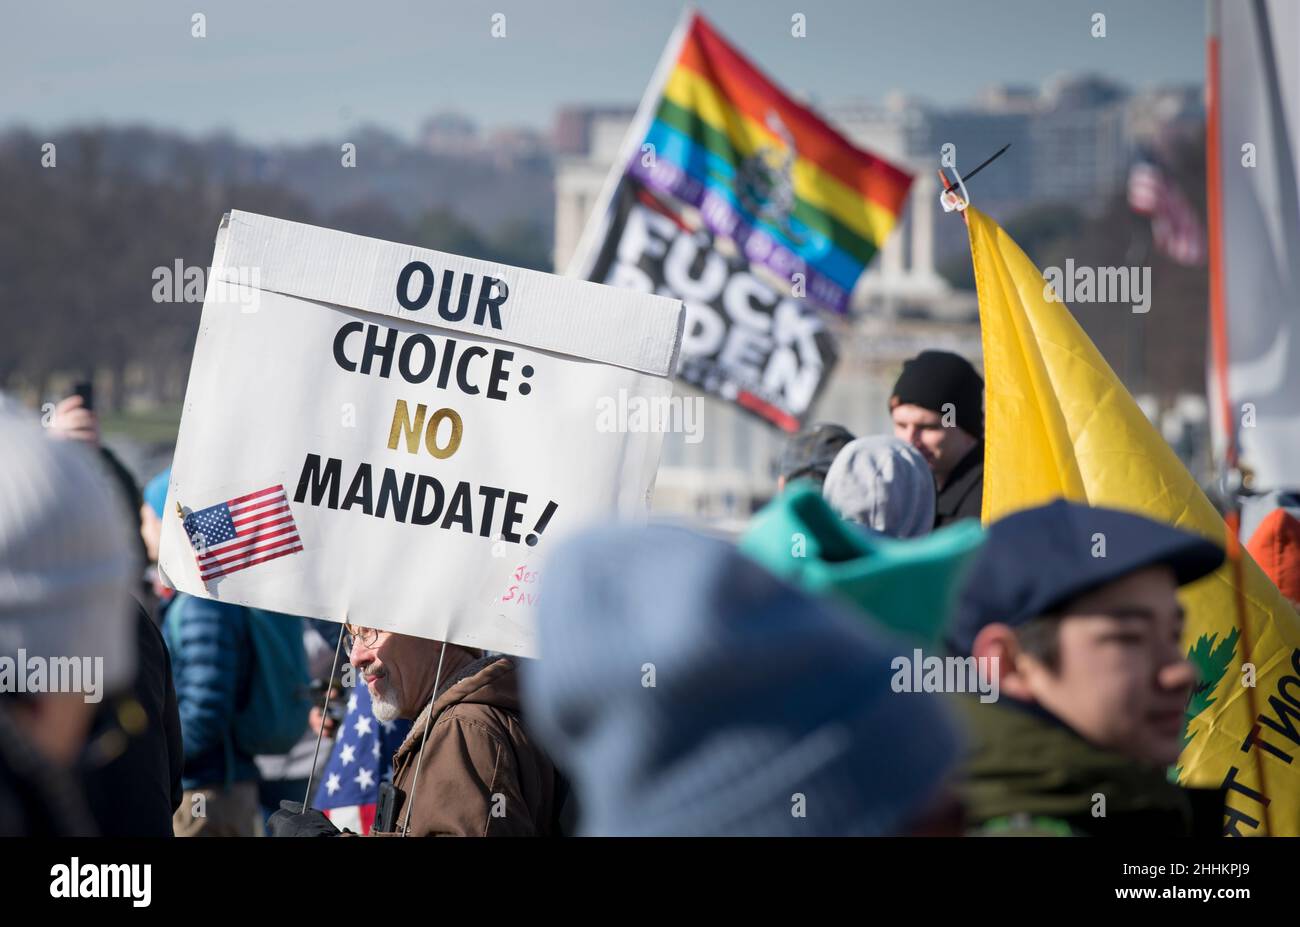 Demonstranten nehmen an einer Niederlage der Mandate teil, die am 23. Januar 2022 in Washington DC marschierten, um gegen Maske und COVID-19-Impfmandate zu protestieren. USA. Stockfoto